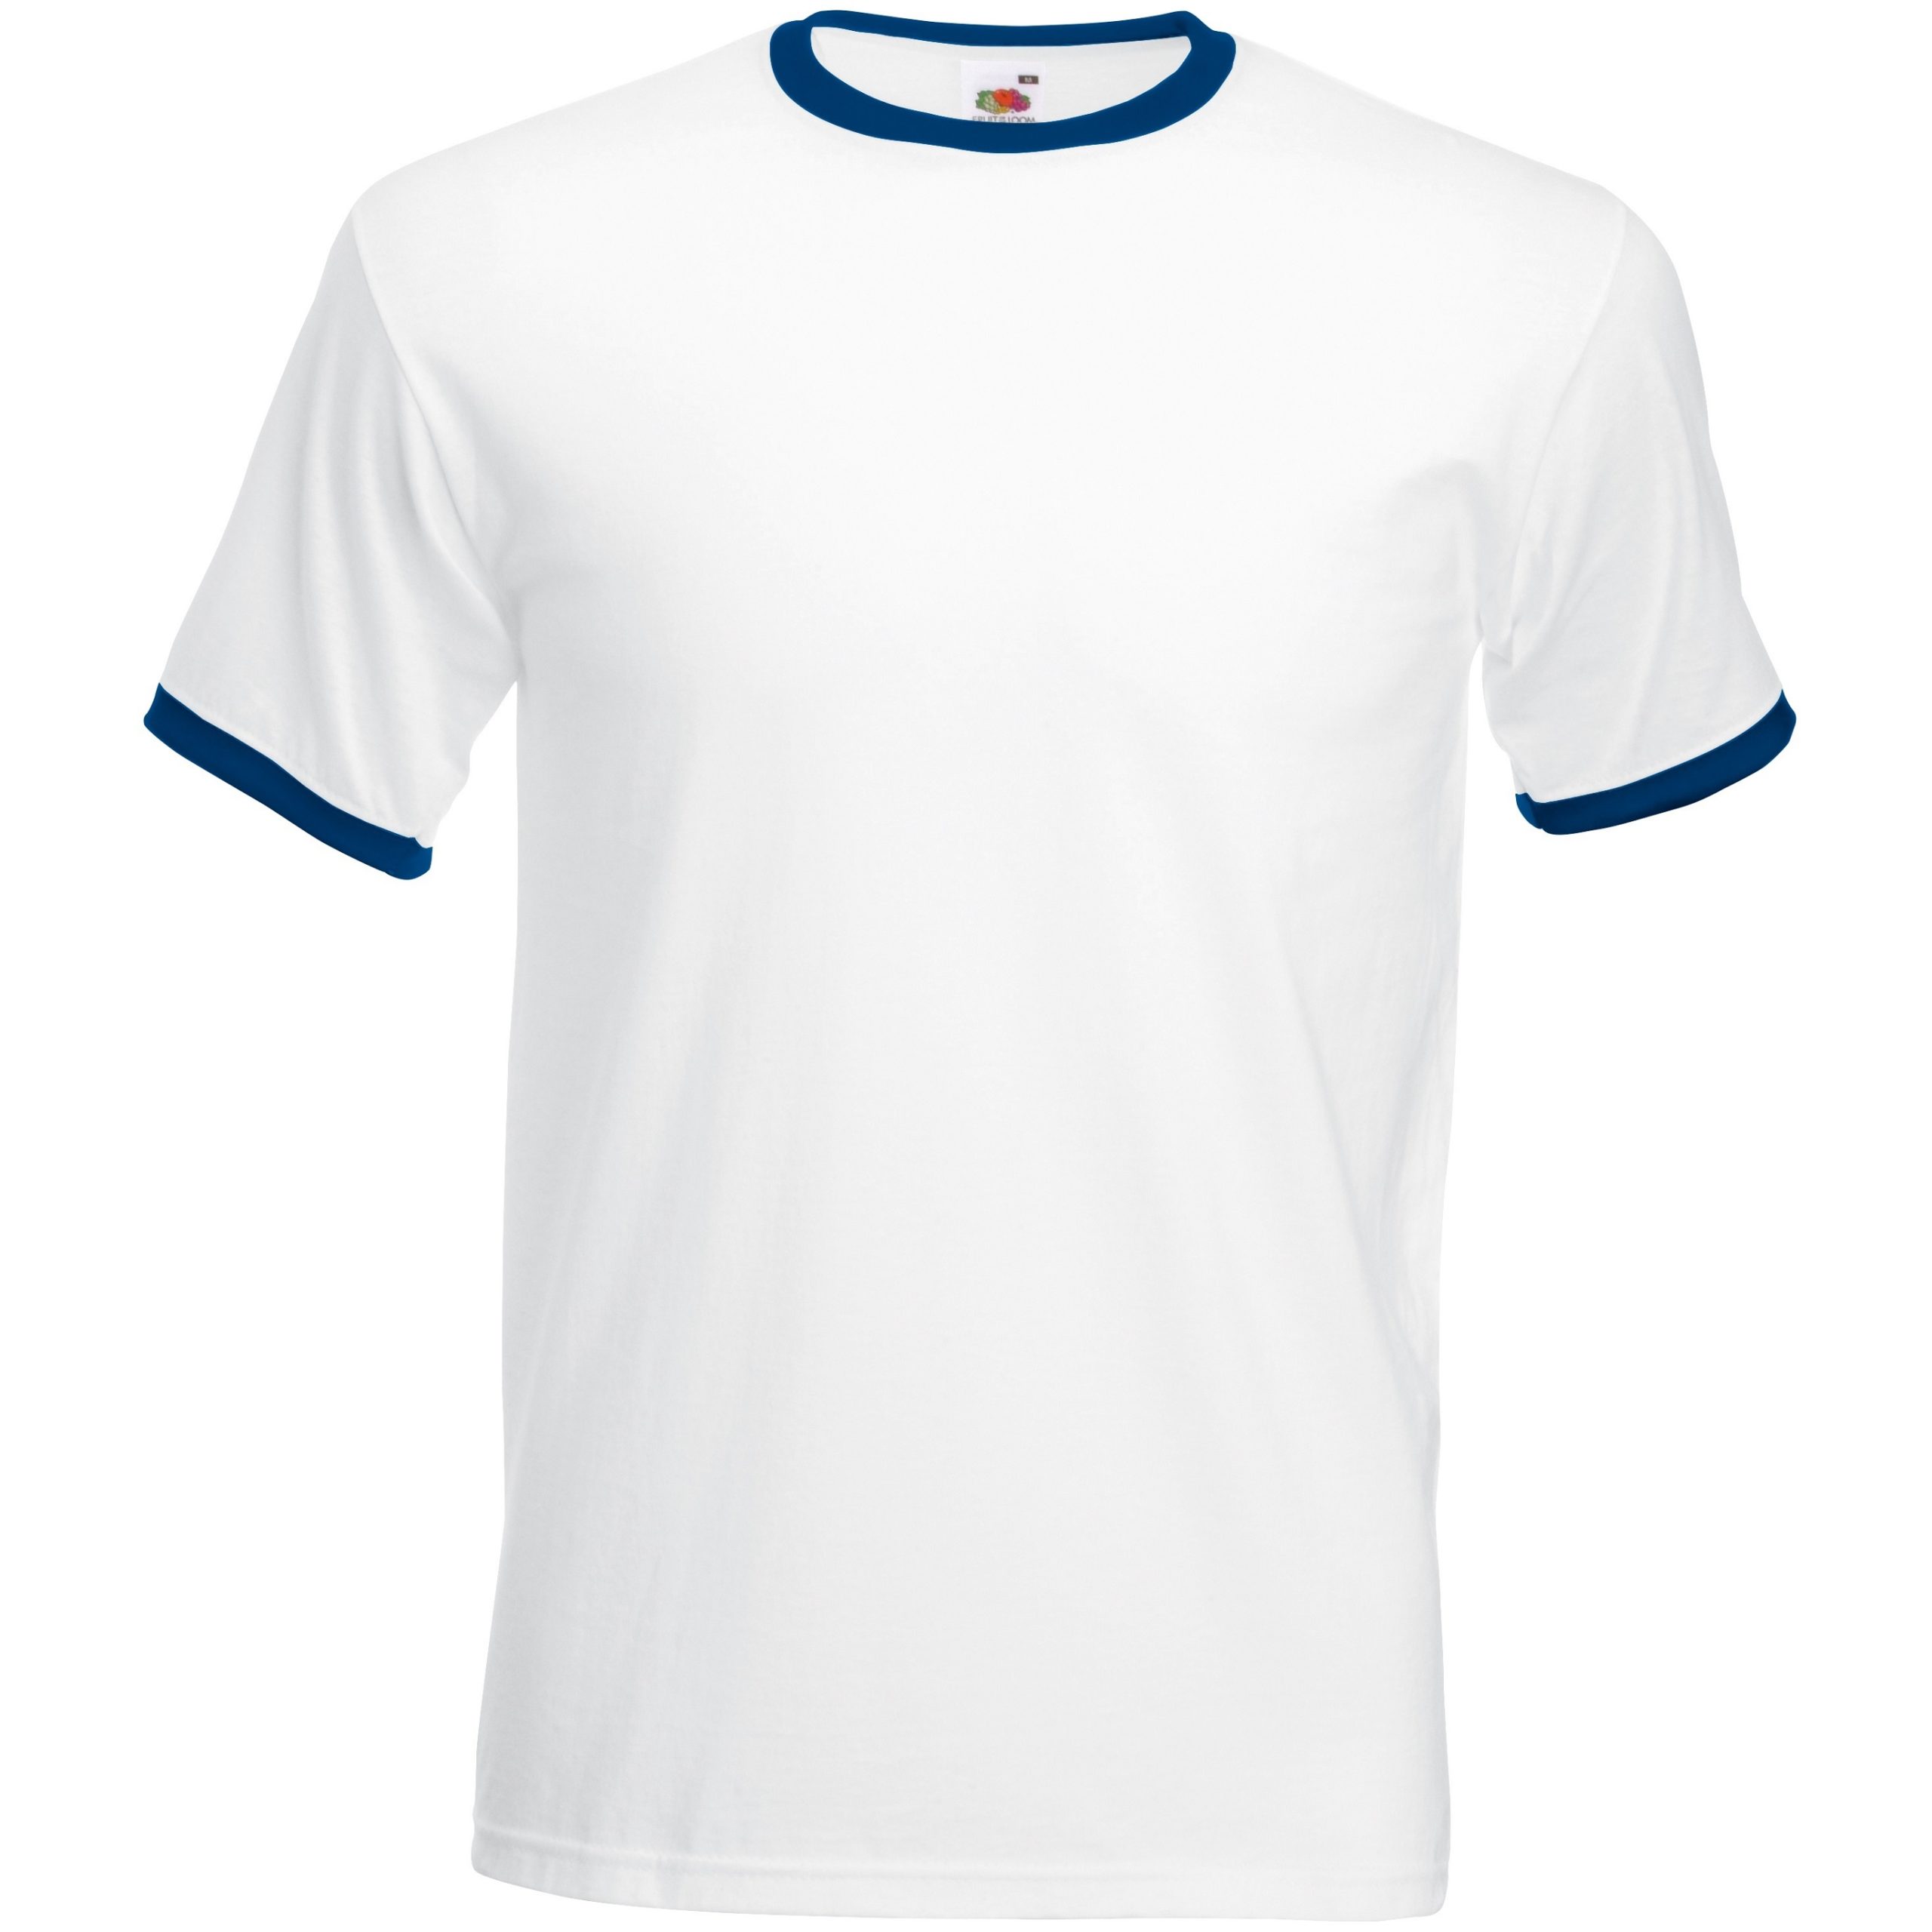 Валдберис футболка мужская. Футболка. Футболка мужская. Футболка с белой окантовкой. Белая футболка мужская.